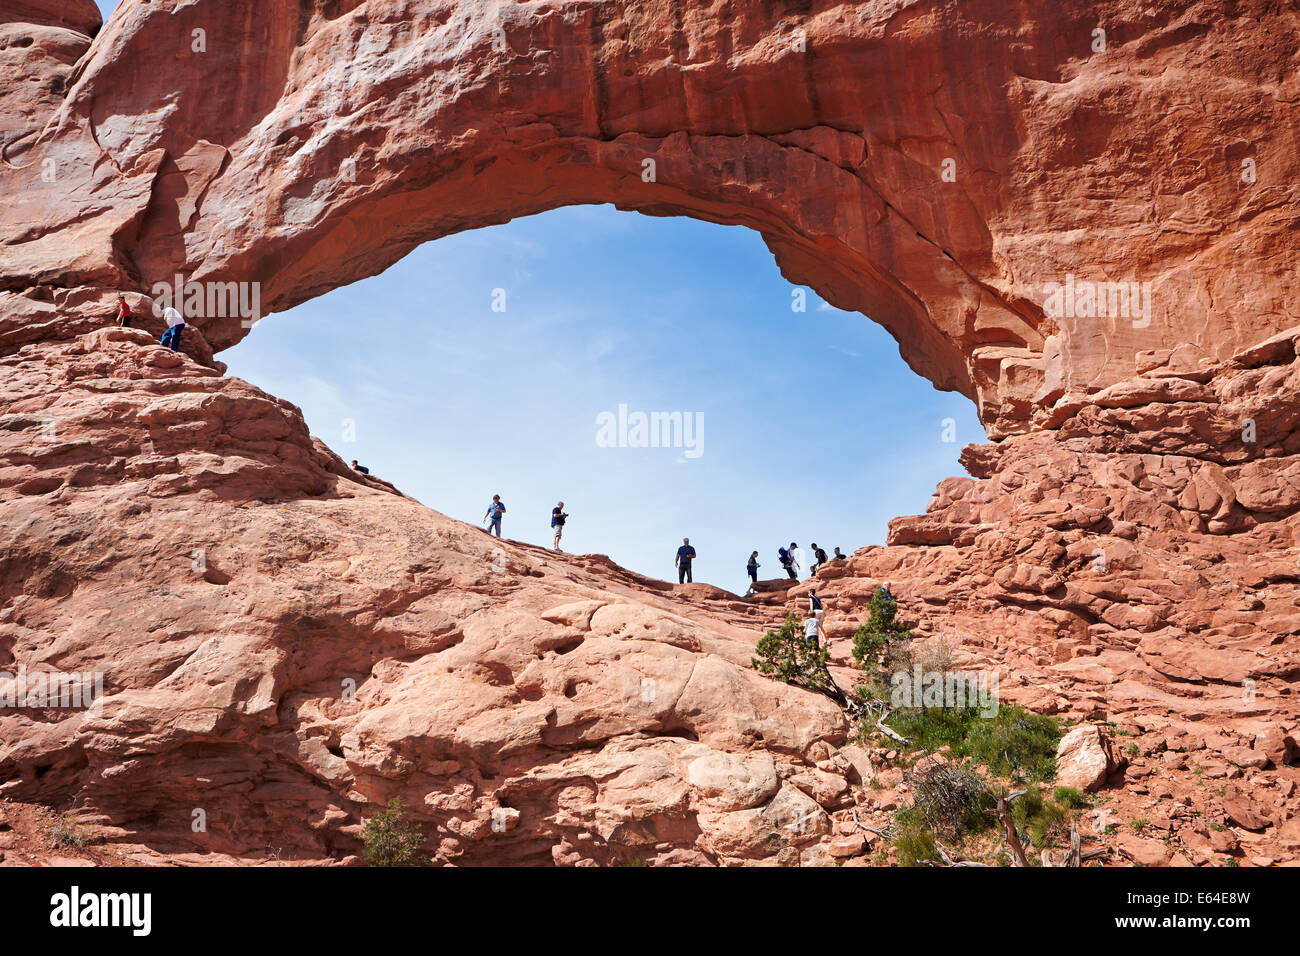 Les touristes se tiennent dans l'arche de la fenêtre du Nord. Parc national Arches, Utah, États-Unis. Banque D'Images